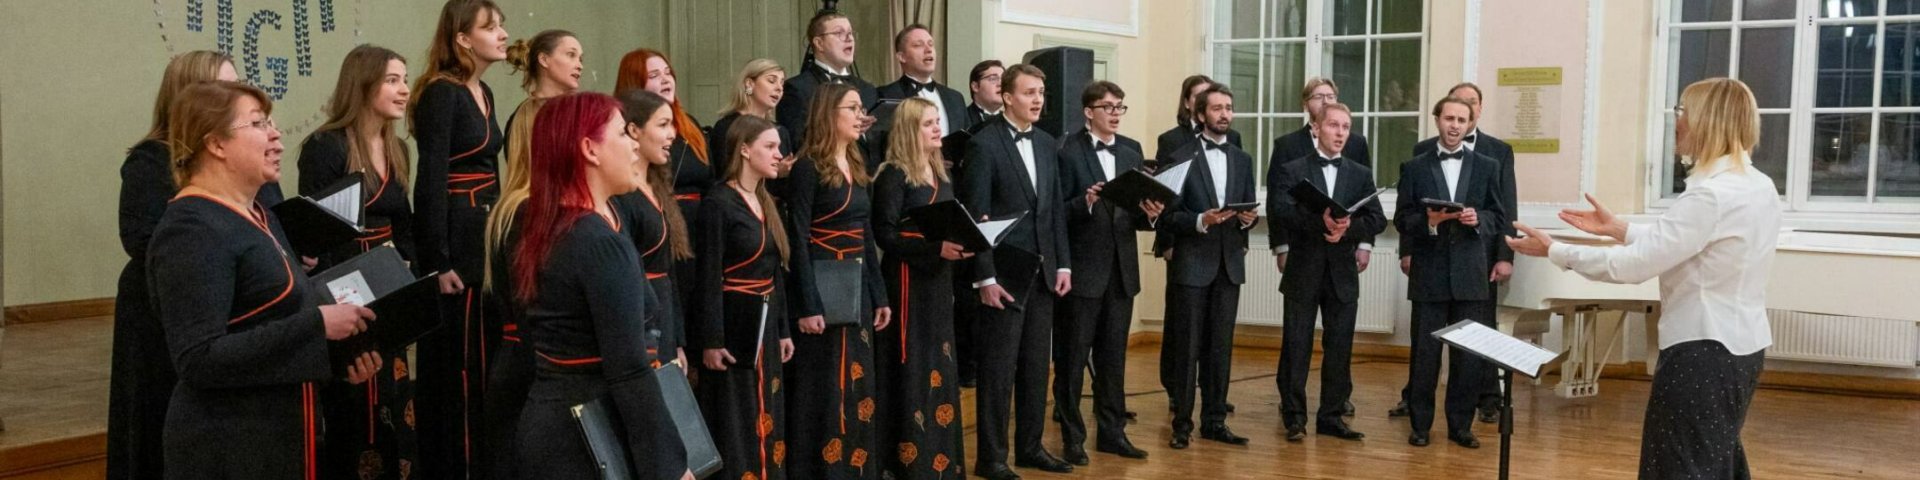 Tartu Ülikooli kammerkoor võistulaulmisel "Tuljak"